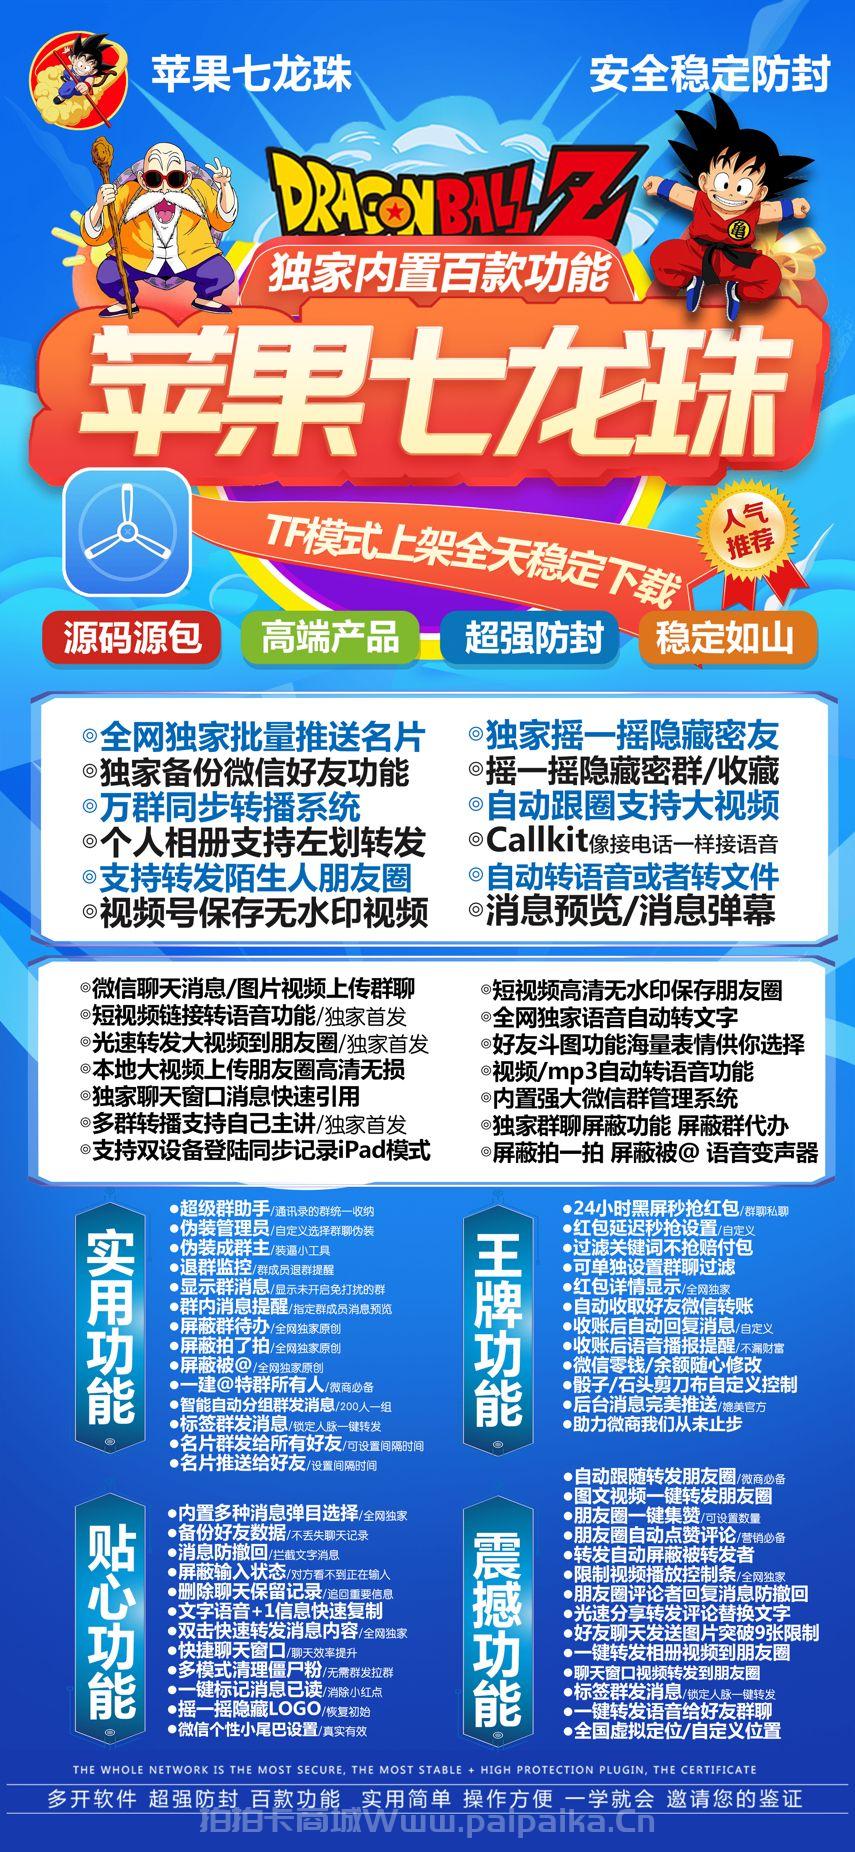 苹果TF七龙珠官网-活动码购买以及下载-九尾狐同款-不支持退换